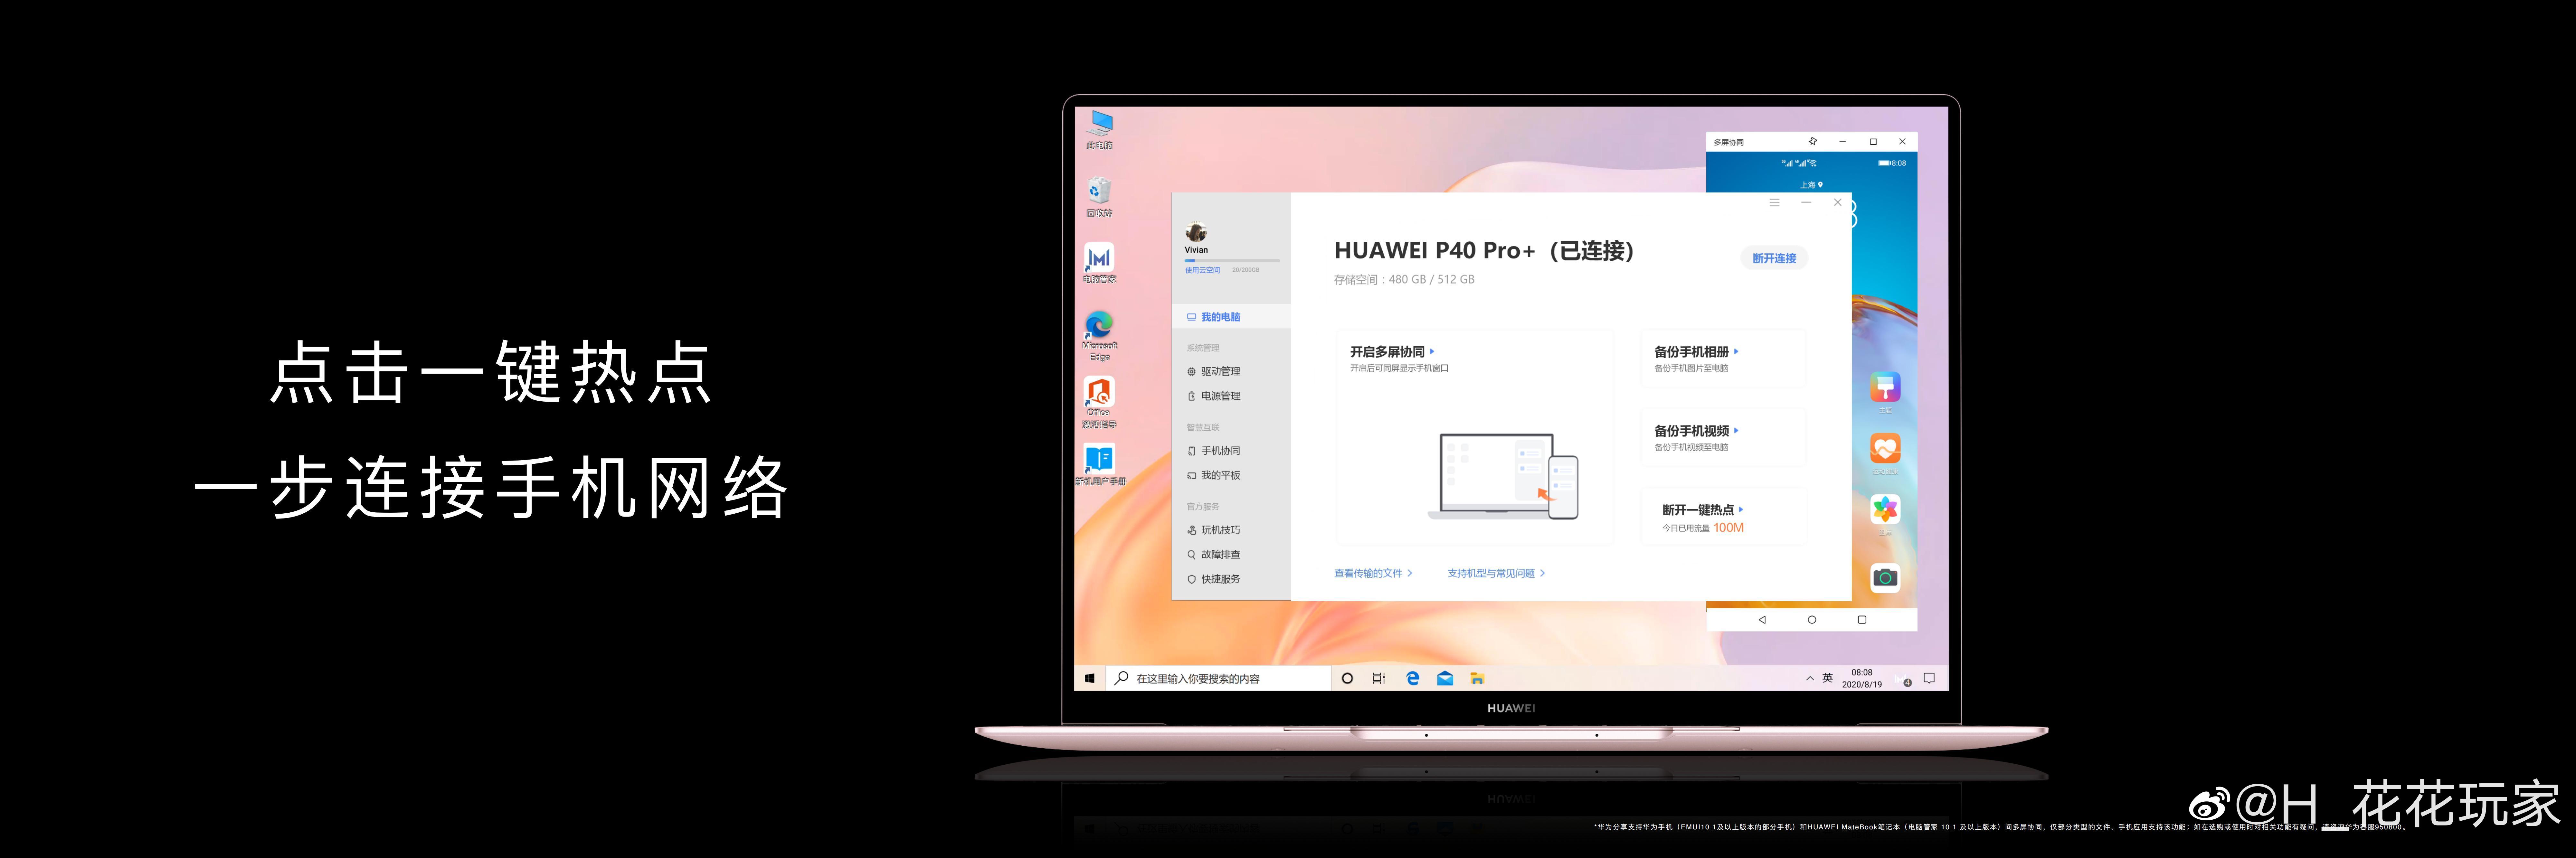 Huawei ra mắt MateBook X cao cấp: Mỏng nhẹ hơn MacBook Air, màn hình cảm ứng 3K, Intel thế hệ 10, giá từ 26.8 triệu - Ảnh 3.